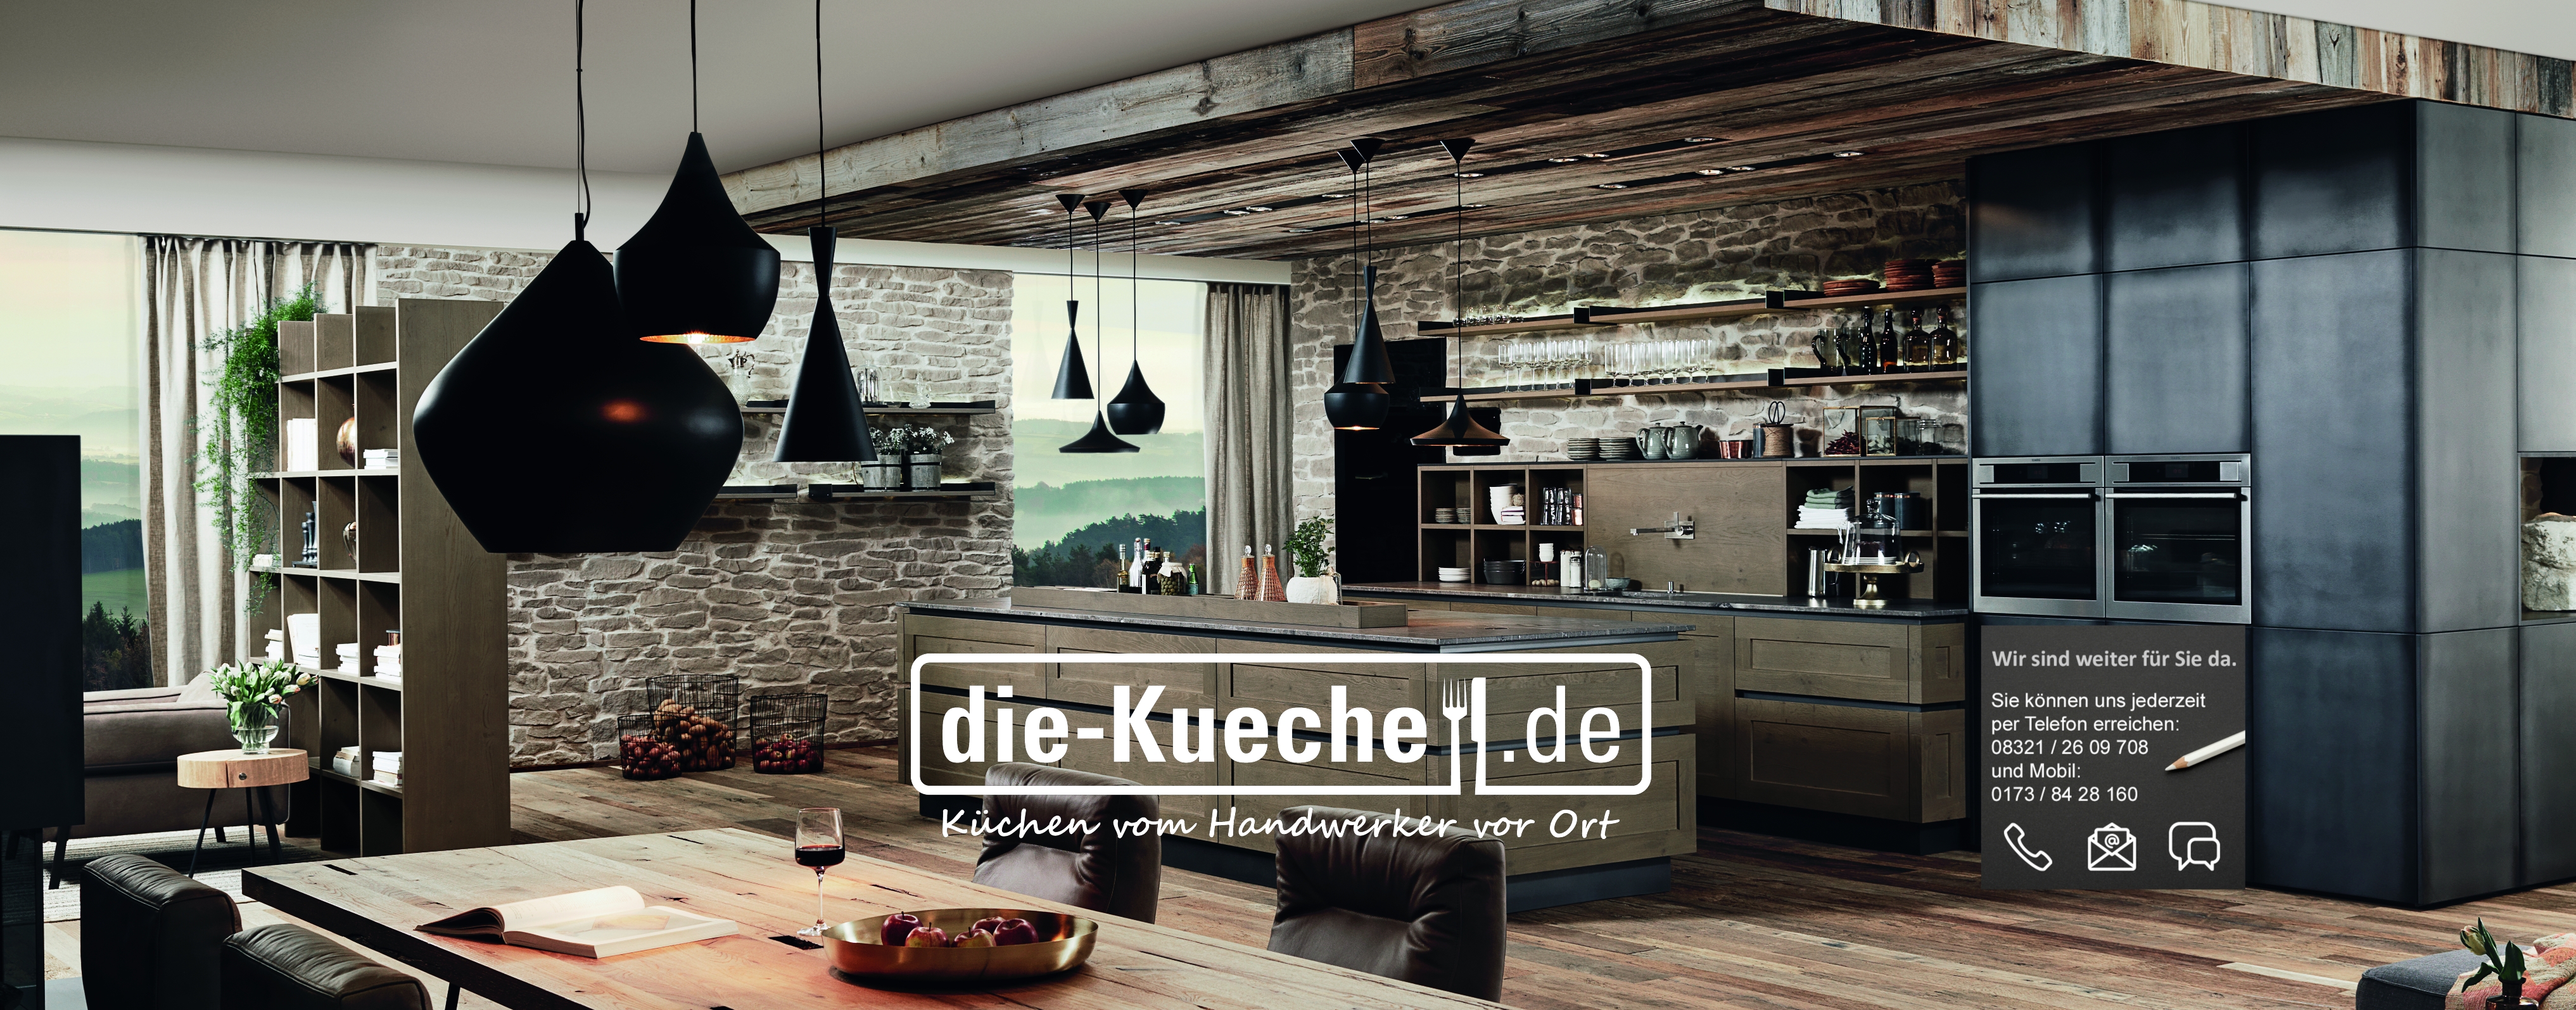 (c) Die-kueche.de